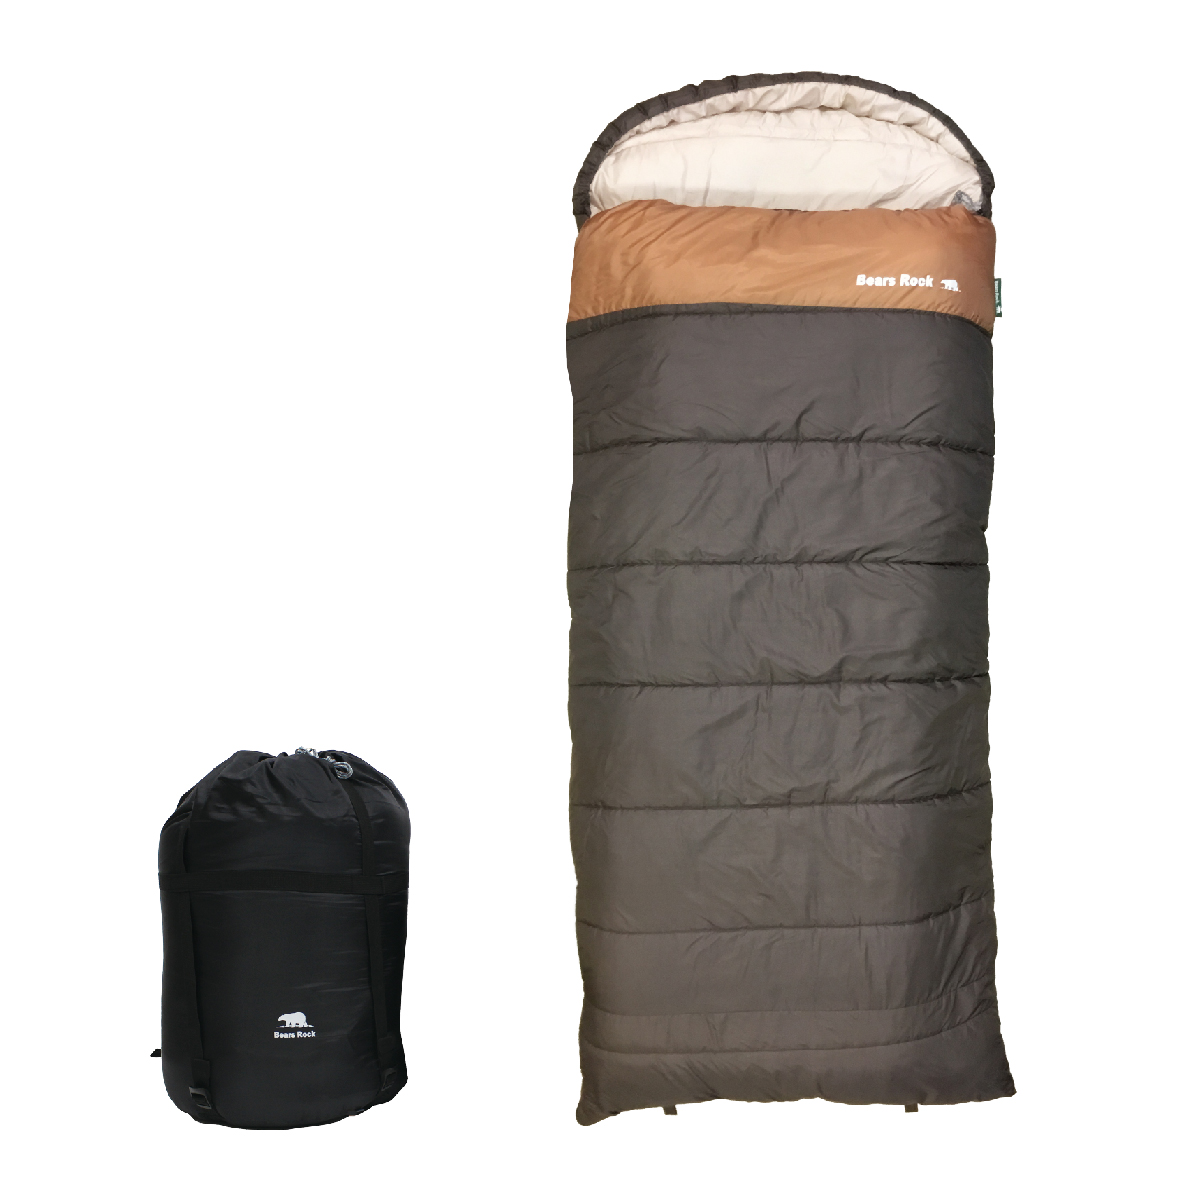 寝袋 冬用 封筒型 最強 -30度 厚みのある布団のような寝心地 ワイド 冬 